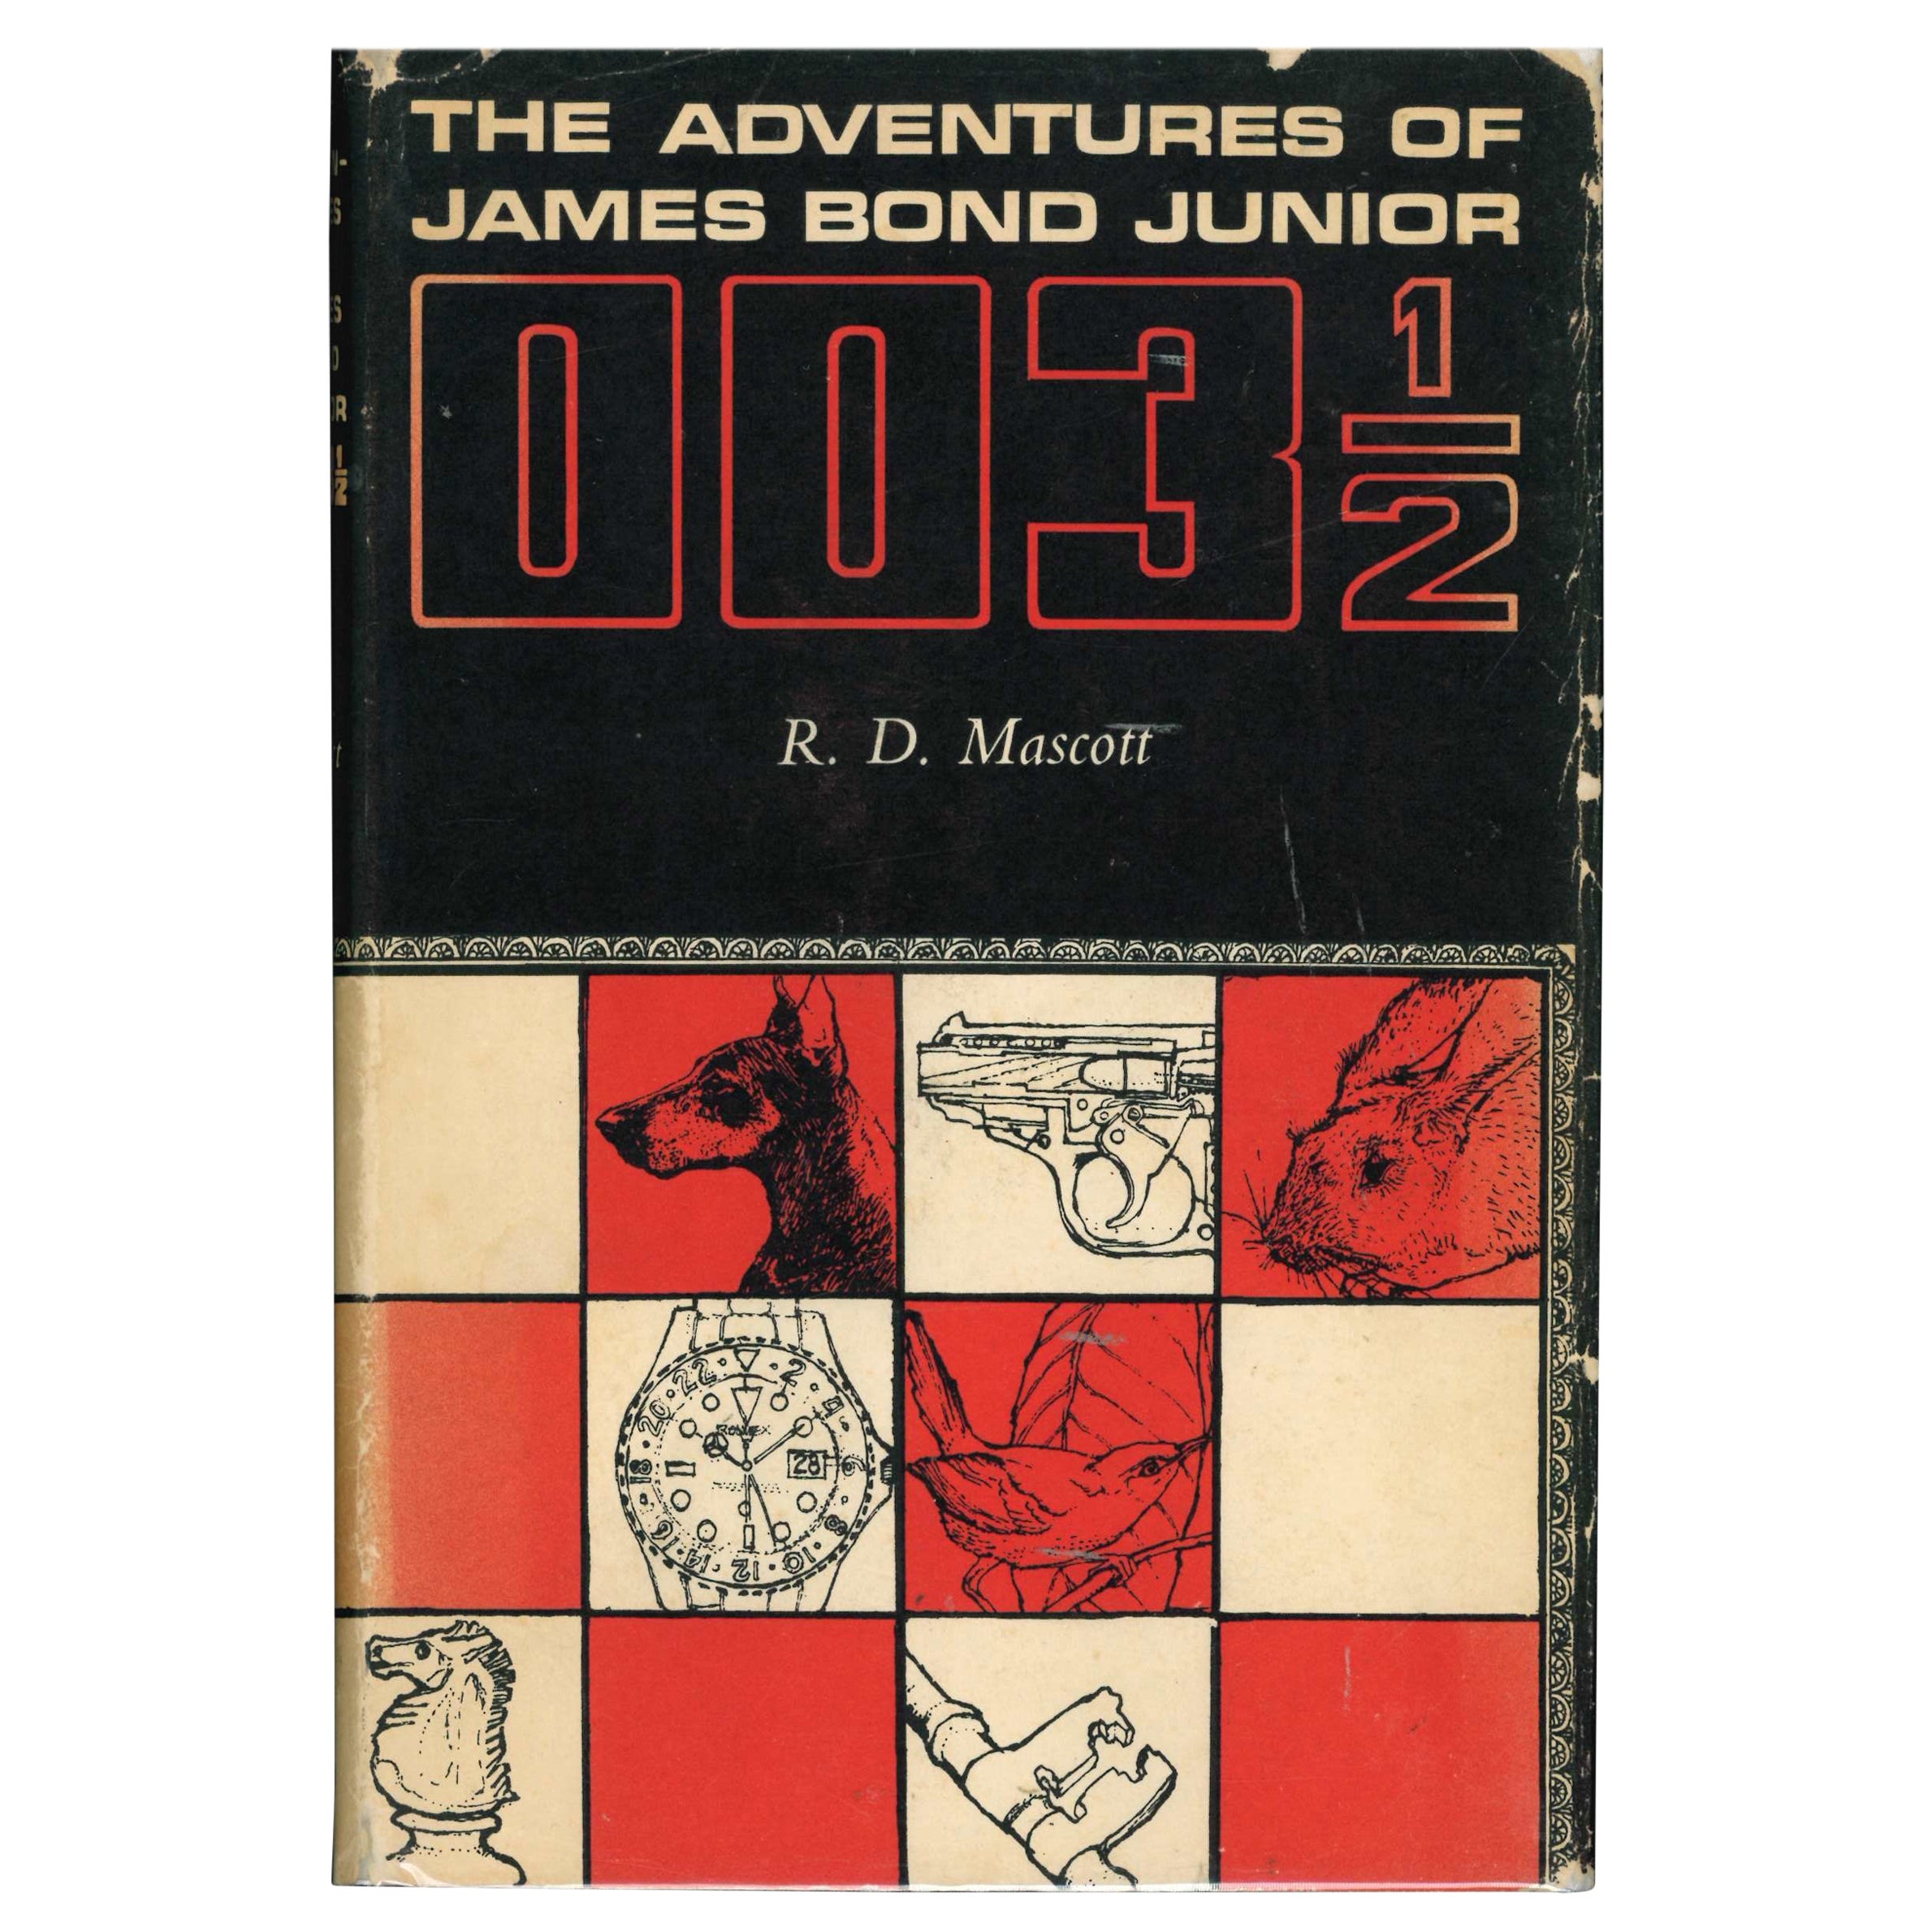 Les aventures de James Bond Junior 003 1/2 par R. D. Mascott (livre) en vente